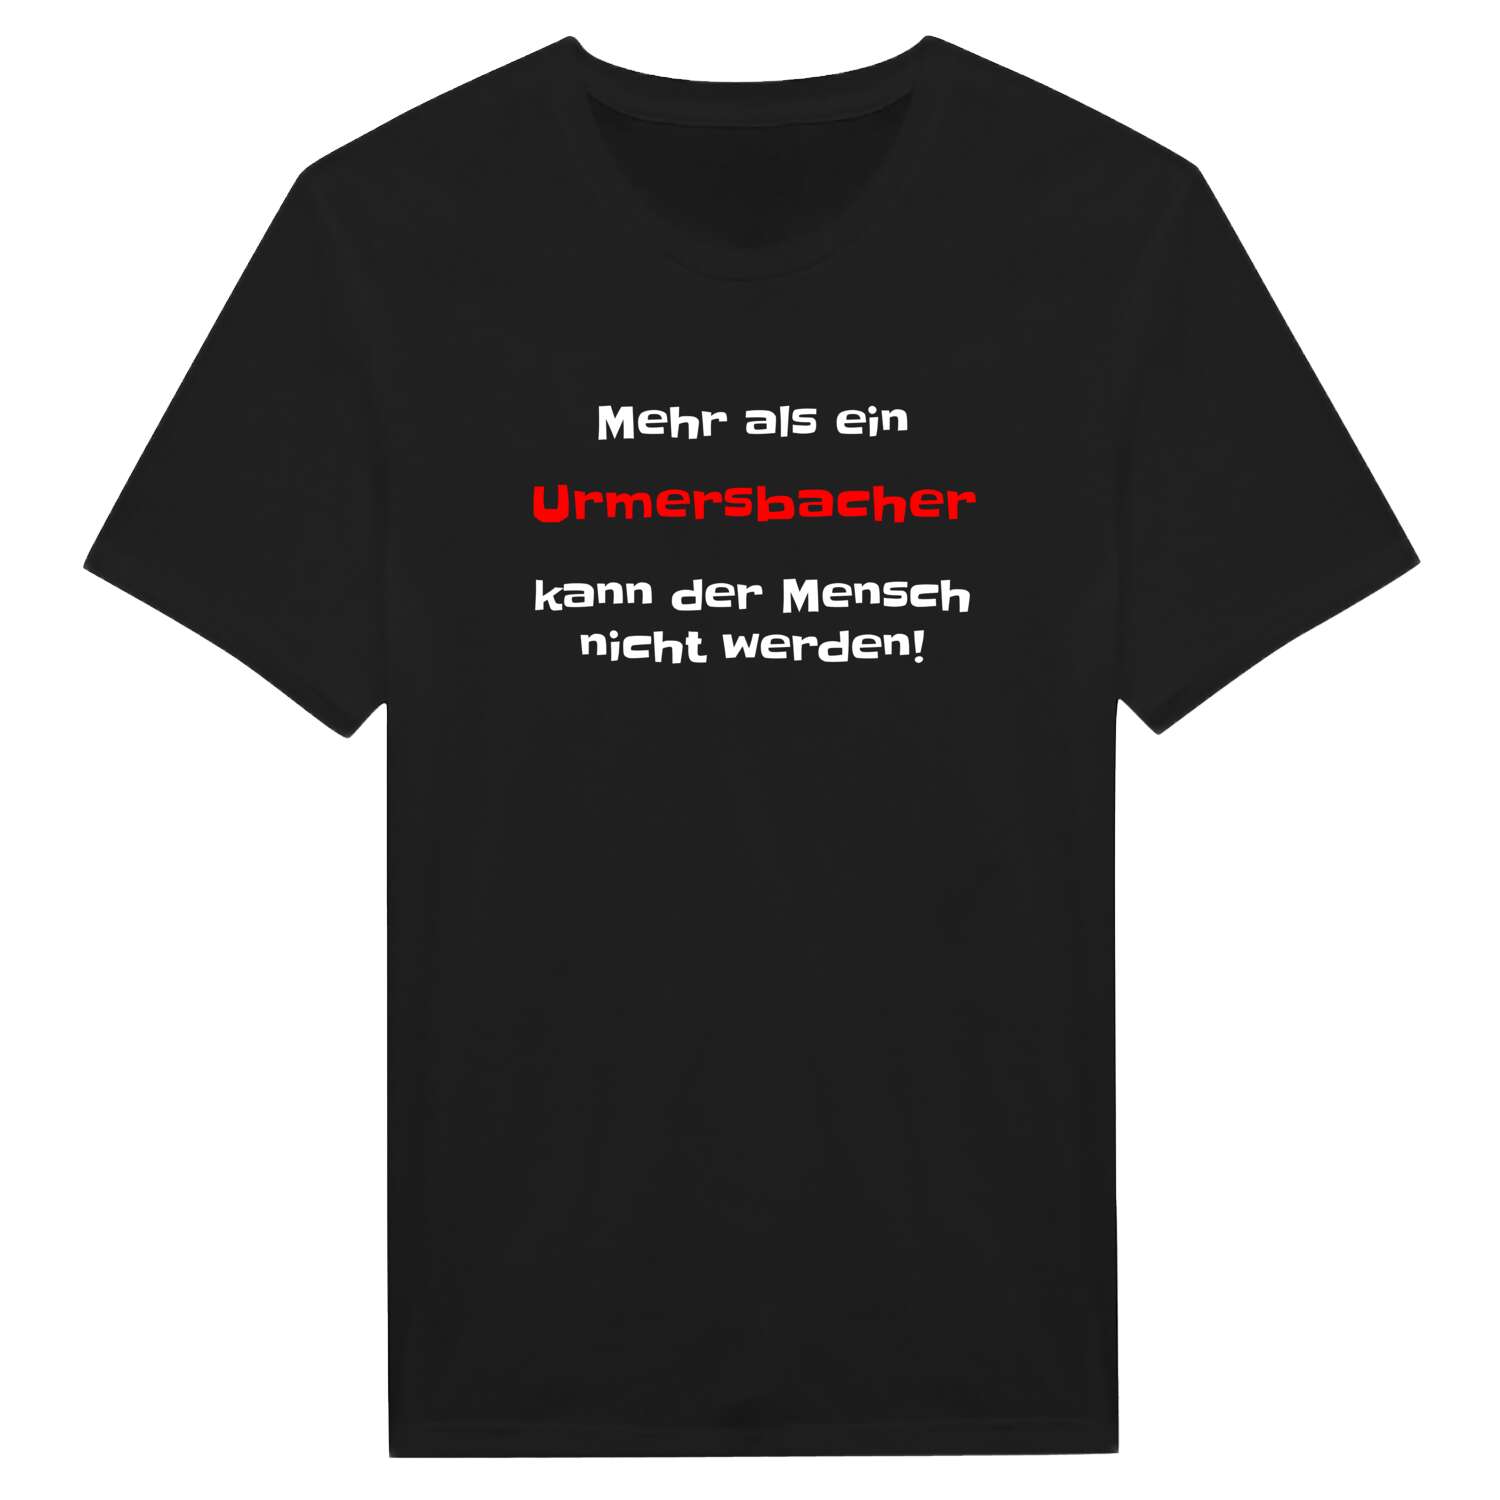 Urmersbach T-Shirt »Mehr als ein«